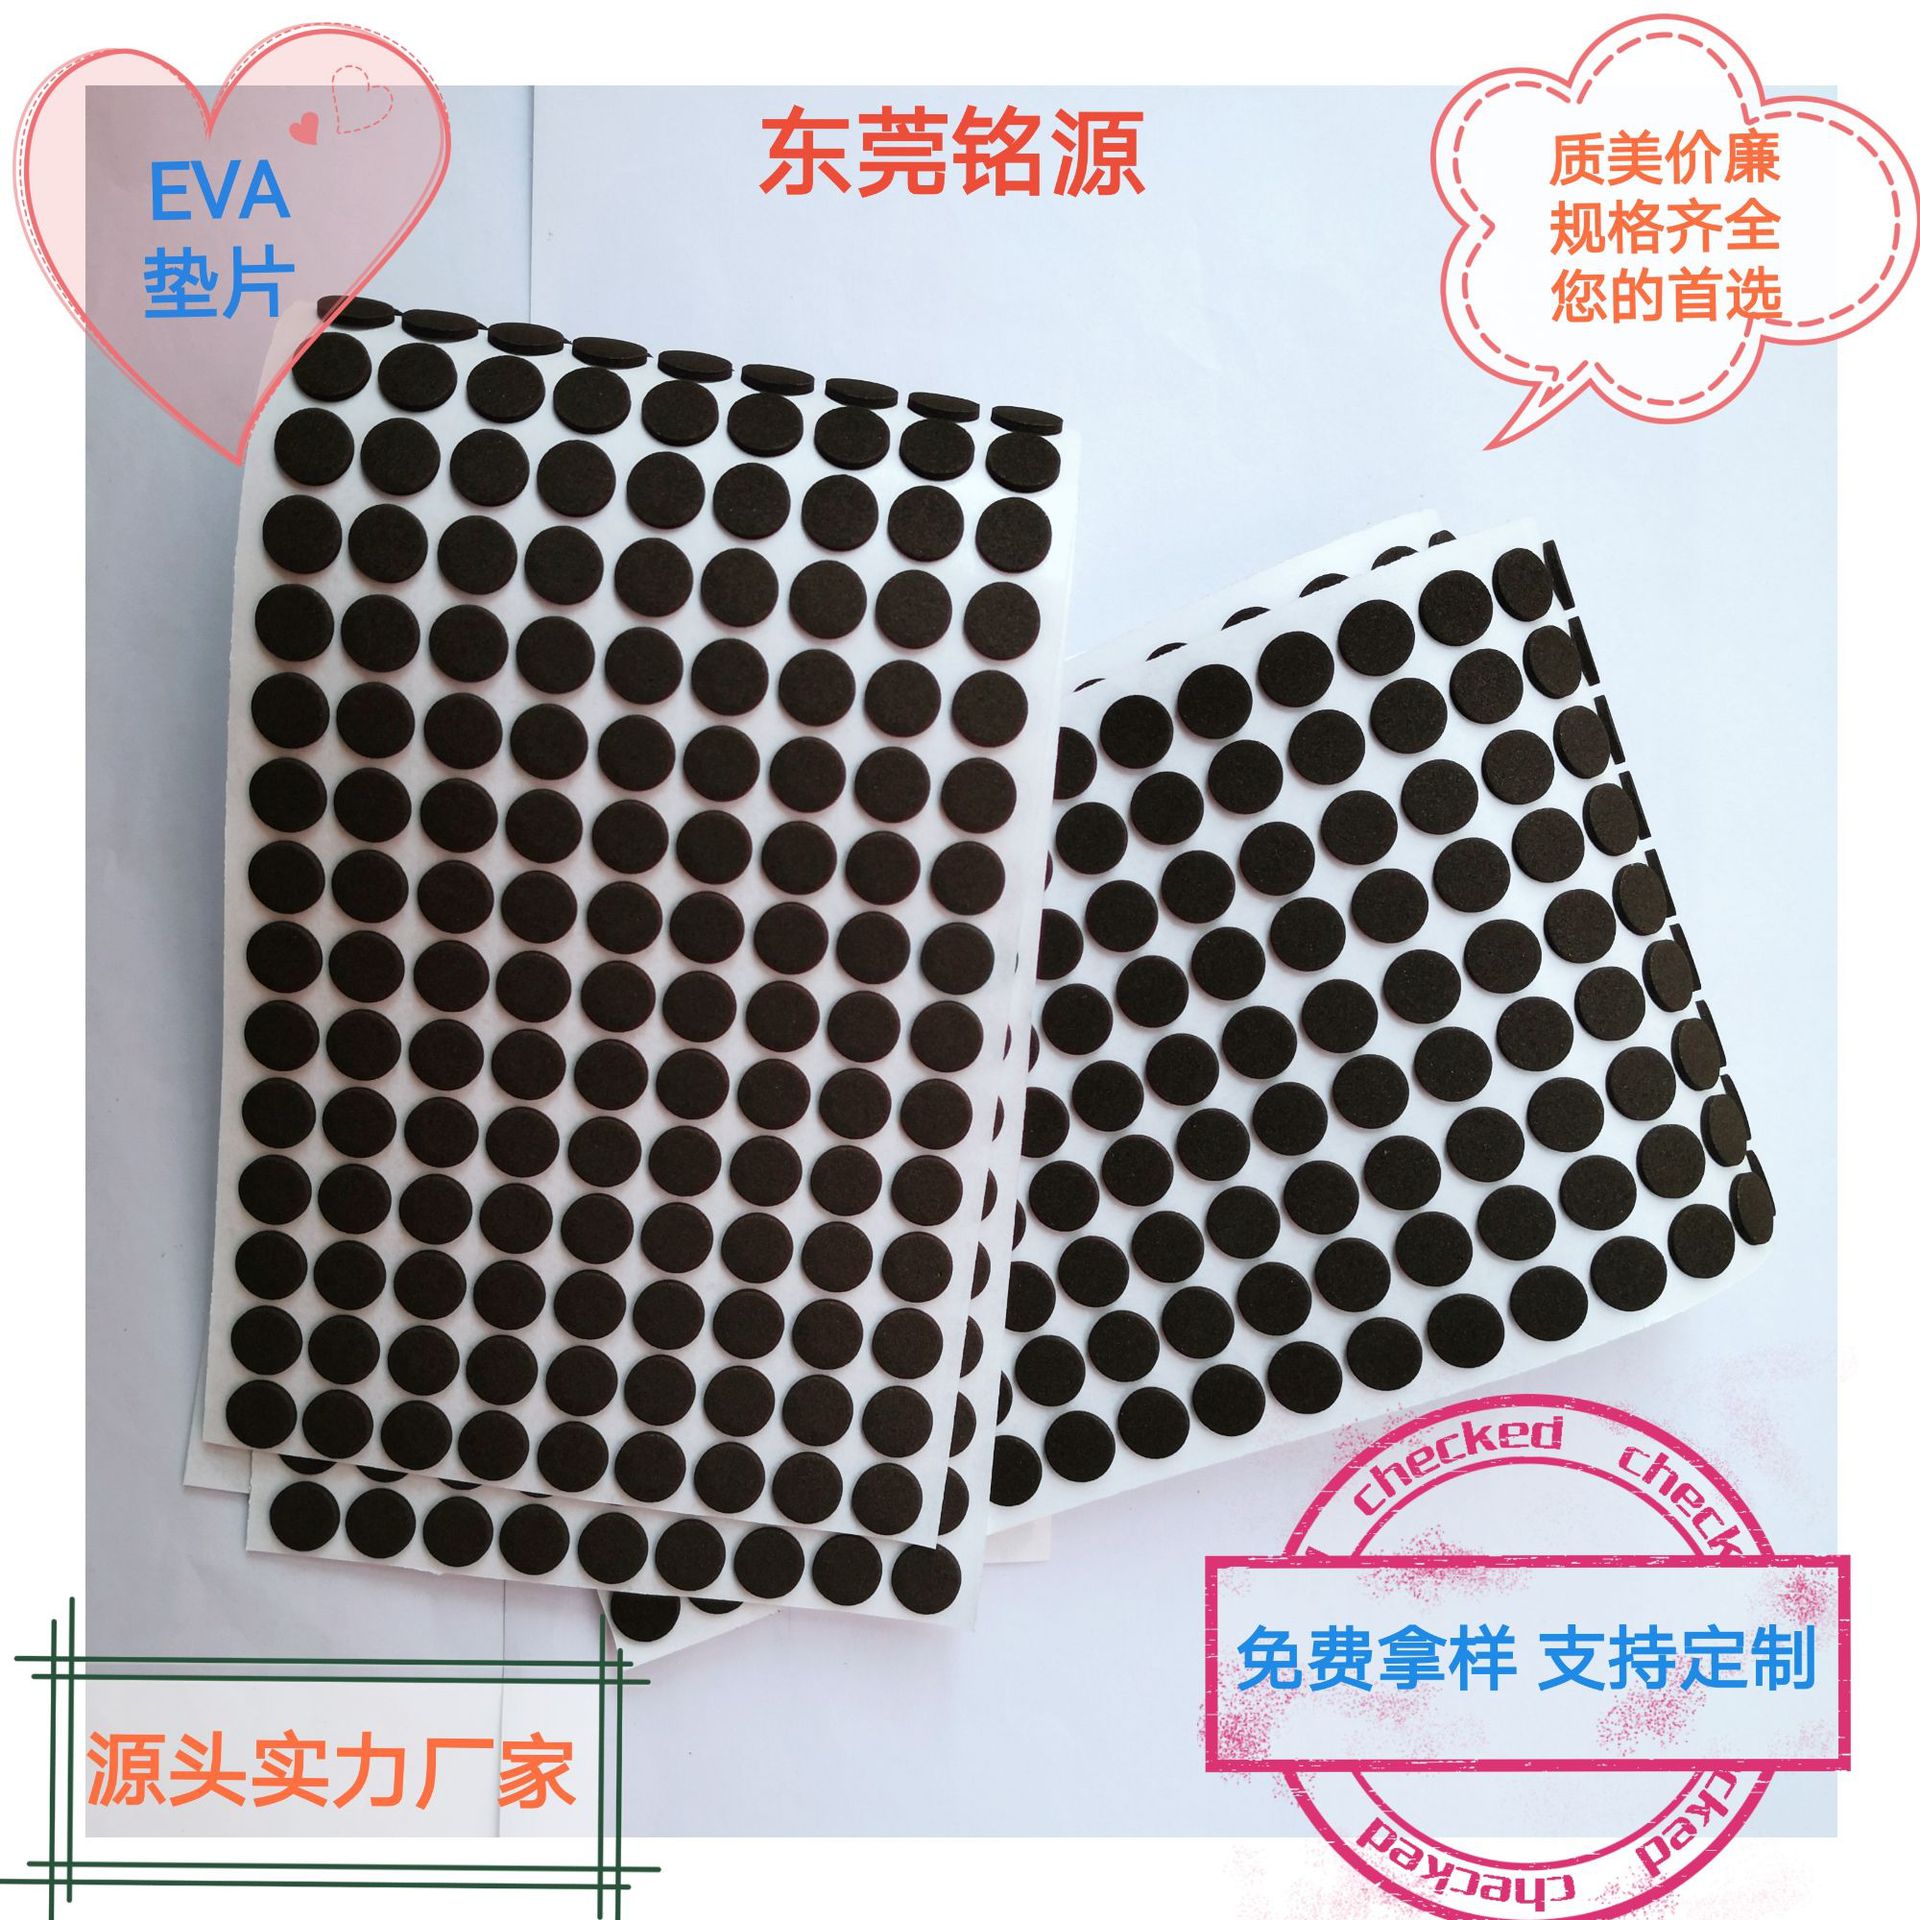 EVA垫片 自粘圆形泡棉 防滑密封 黑色缓冲 隔音防火 灰色海绵胶垫